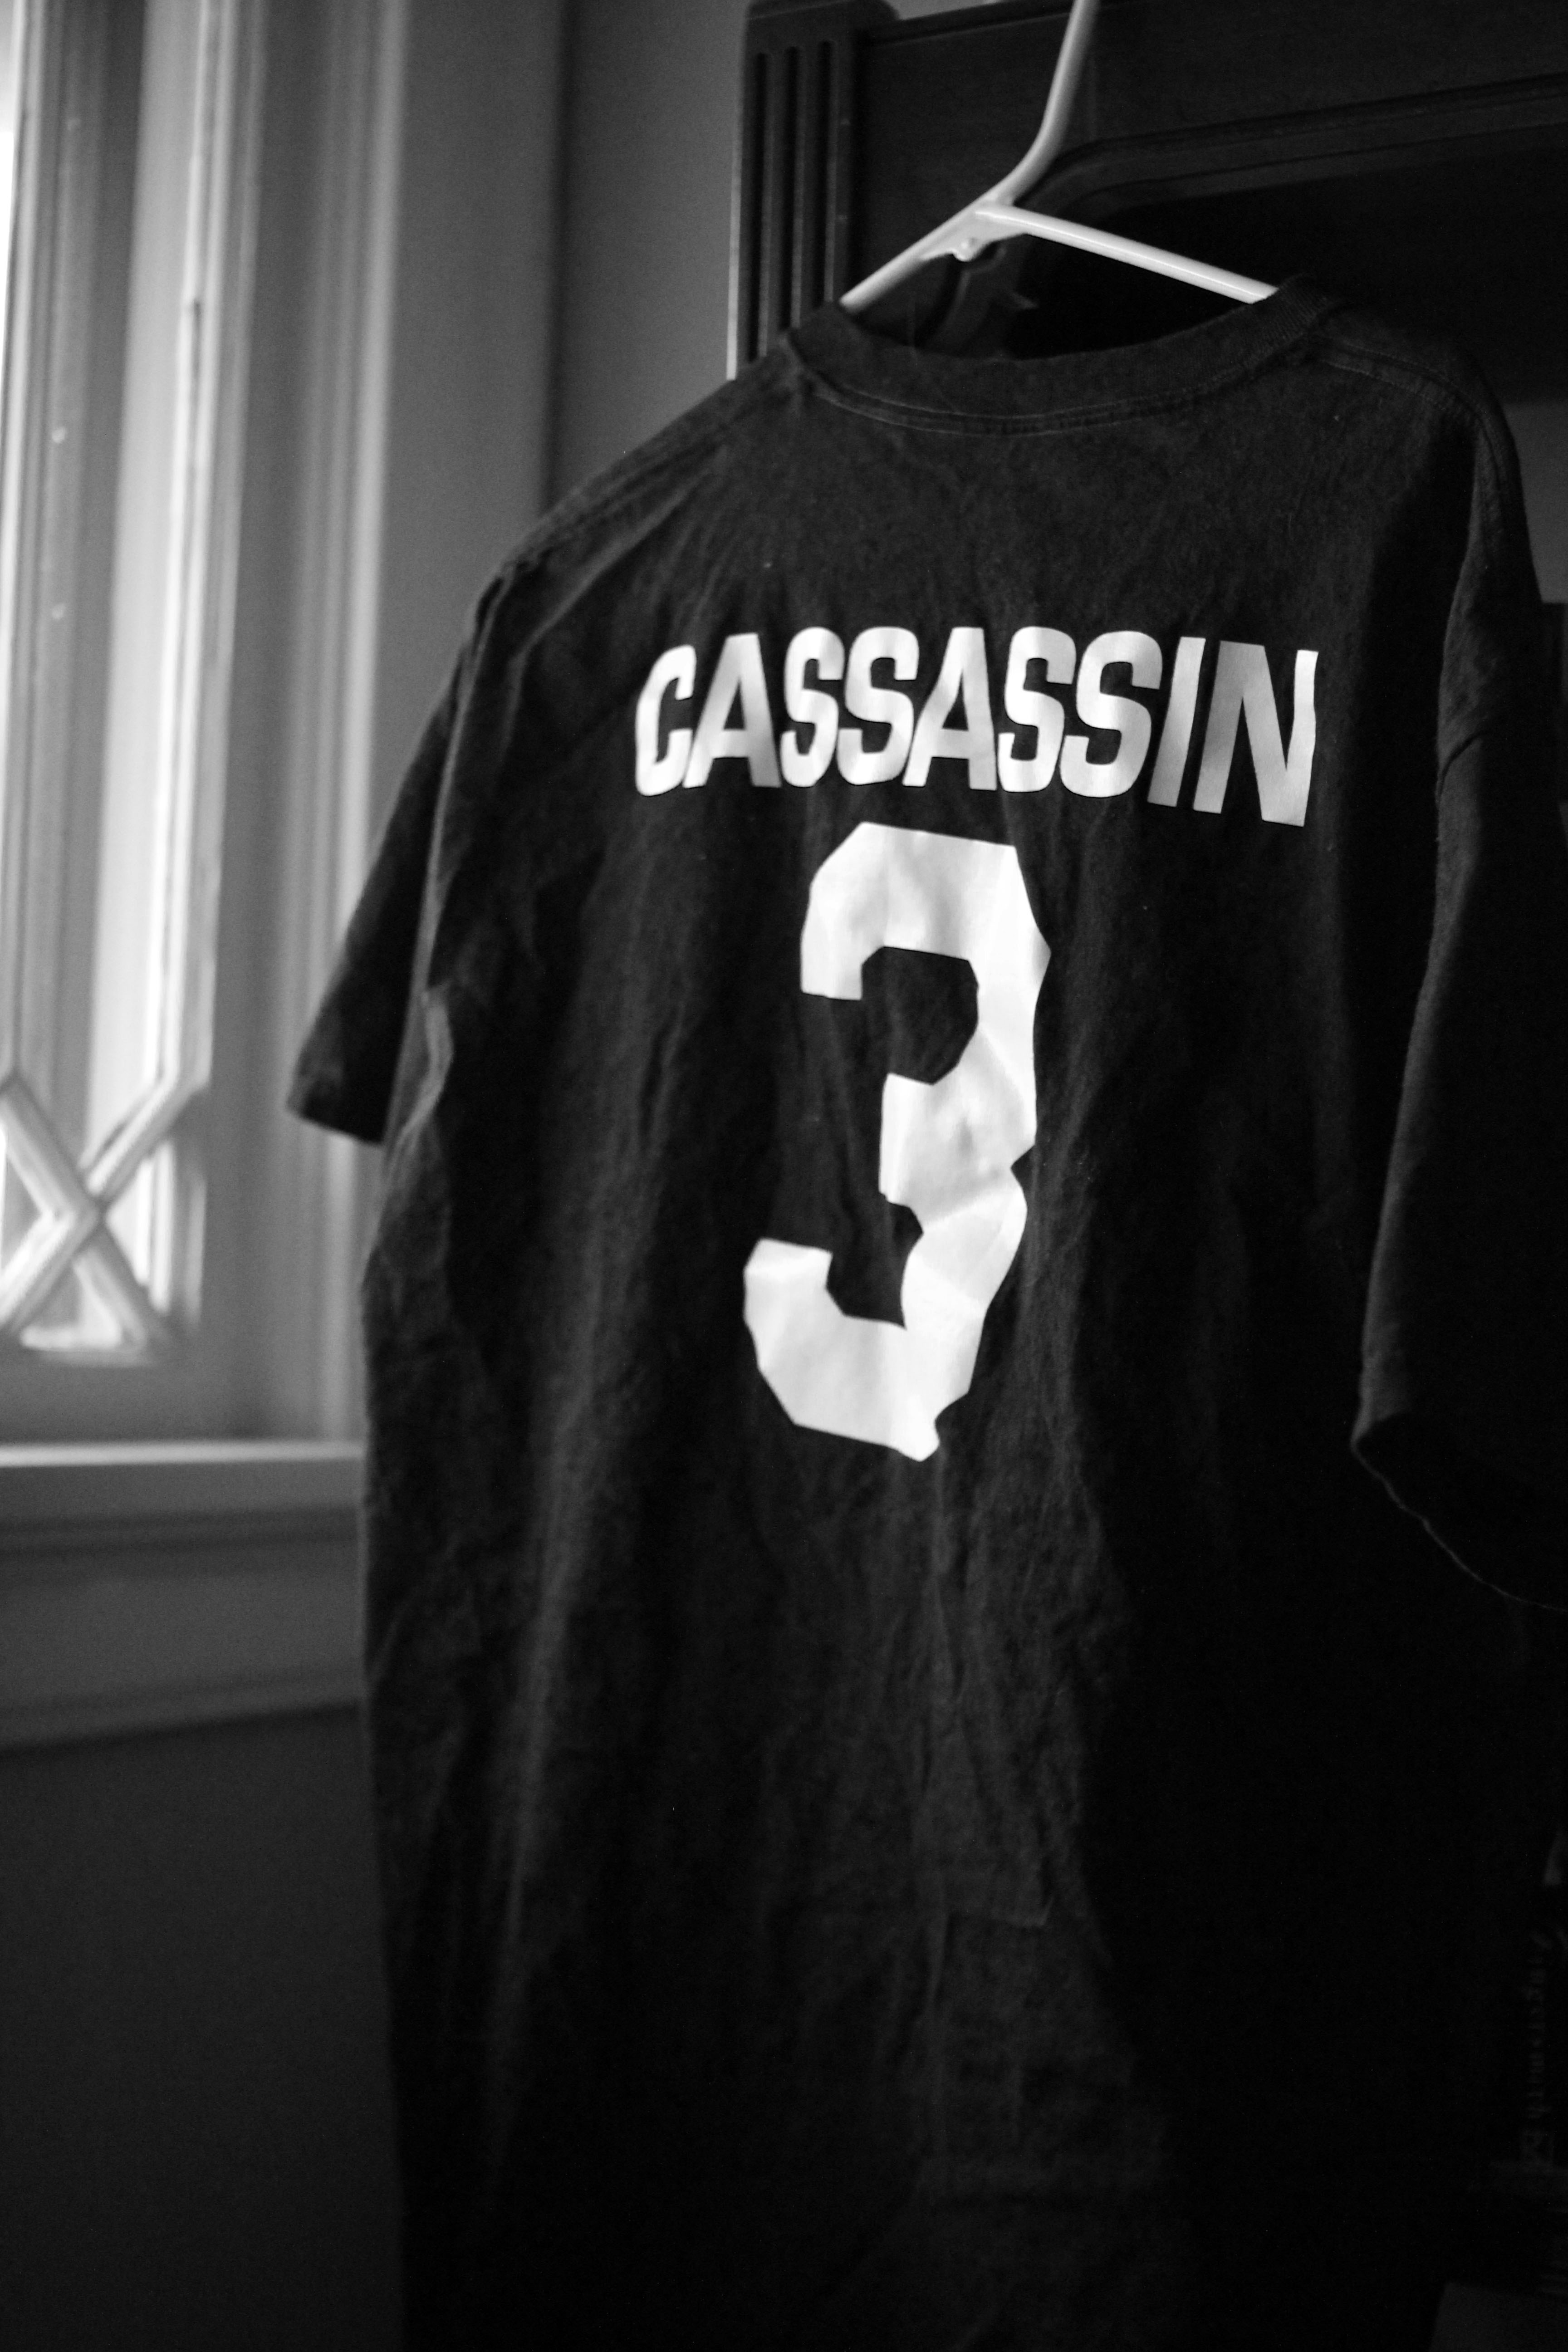 Cassassin.